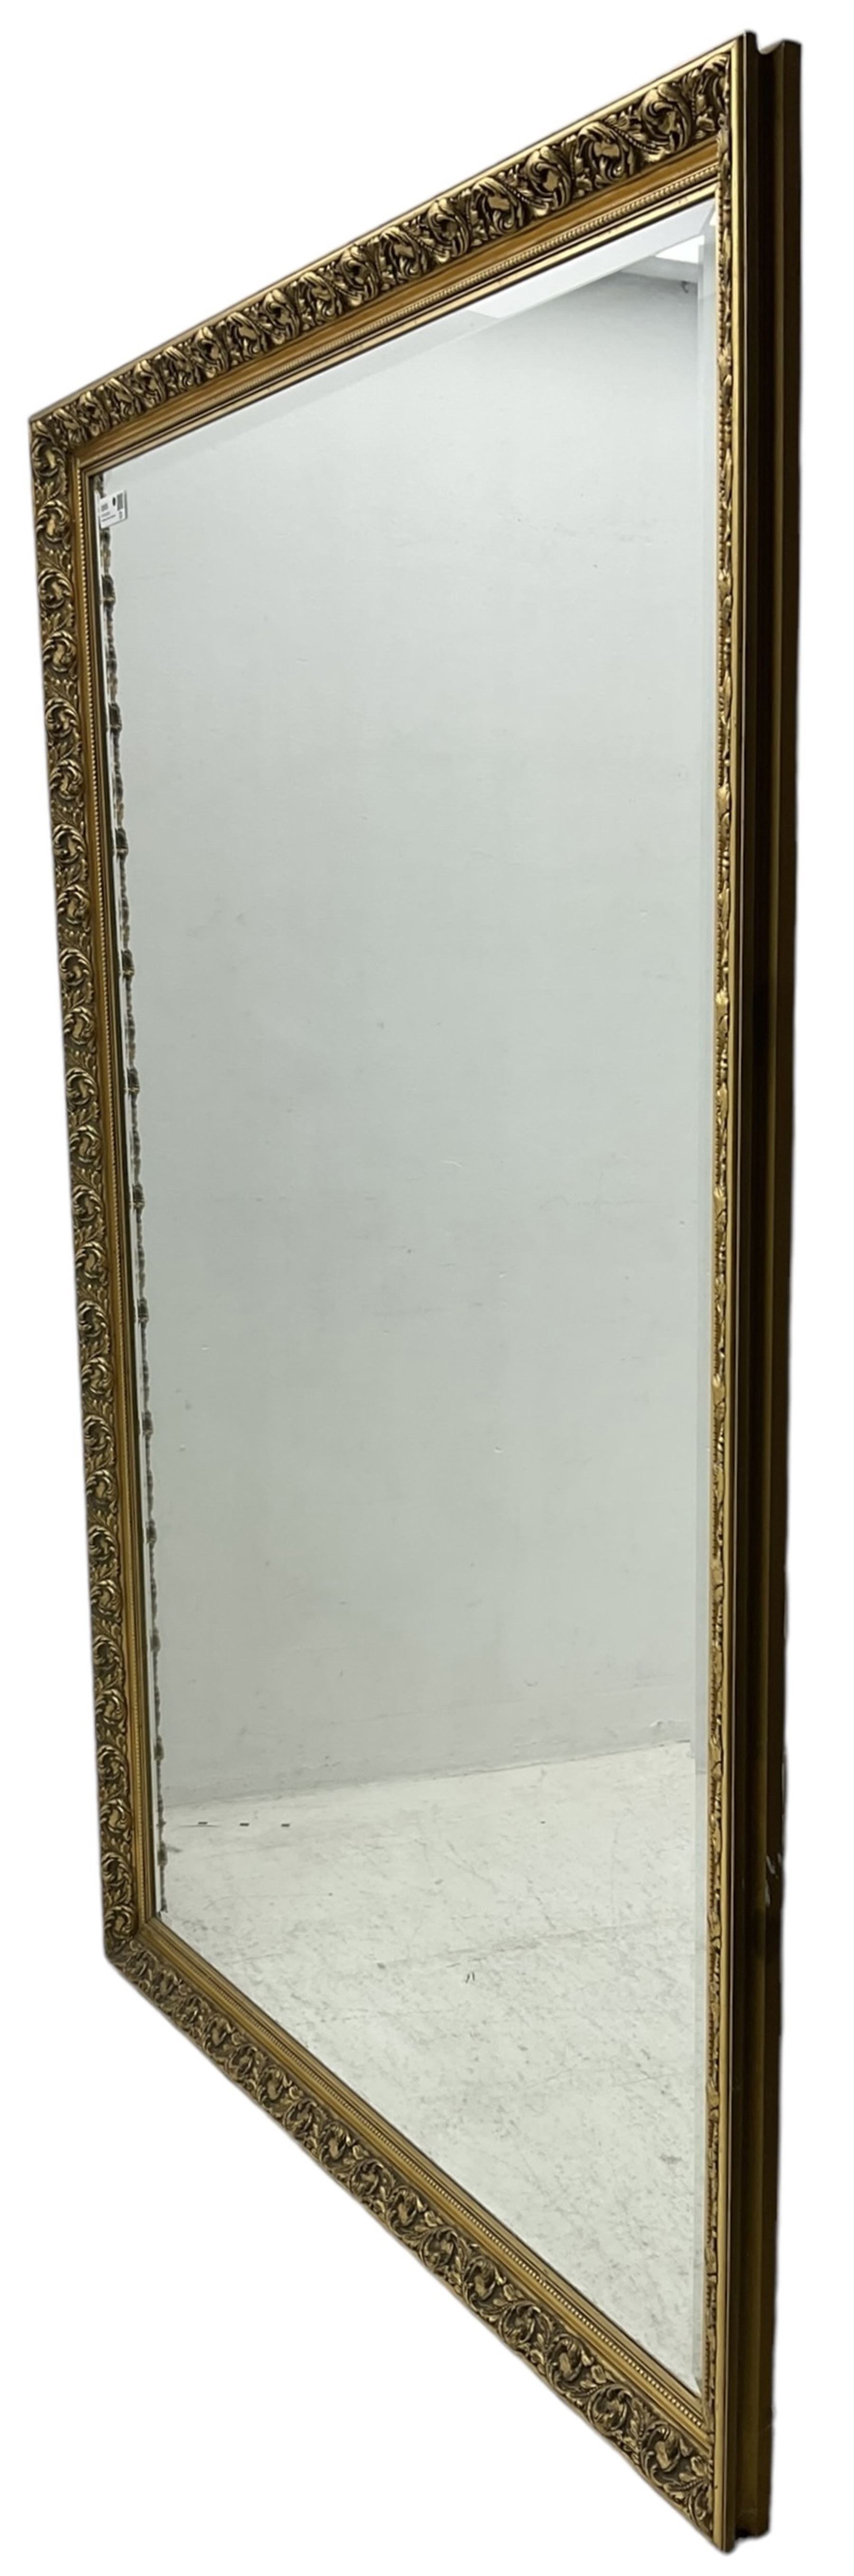 Large rectangular wall mirror - Image 3 of 4